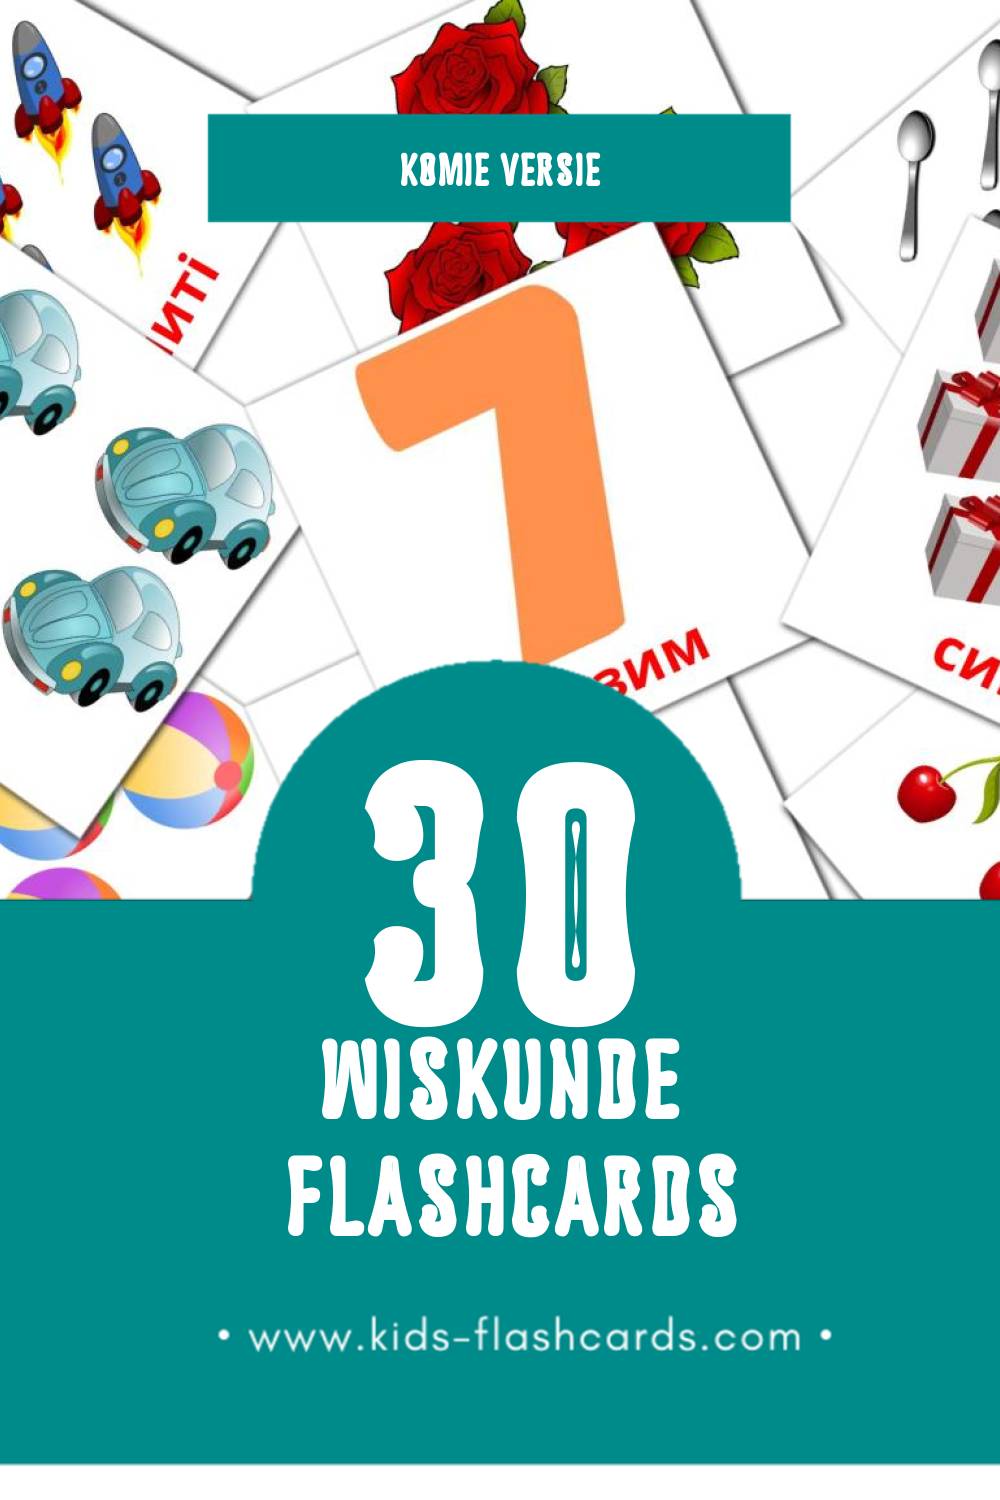 Visuele Математика Flashcards voor Kleuters (30 kaarten in het Komi)